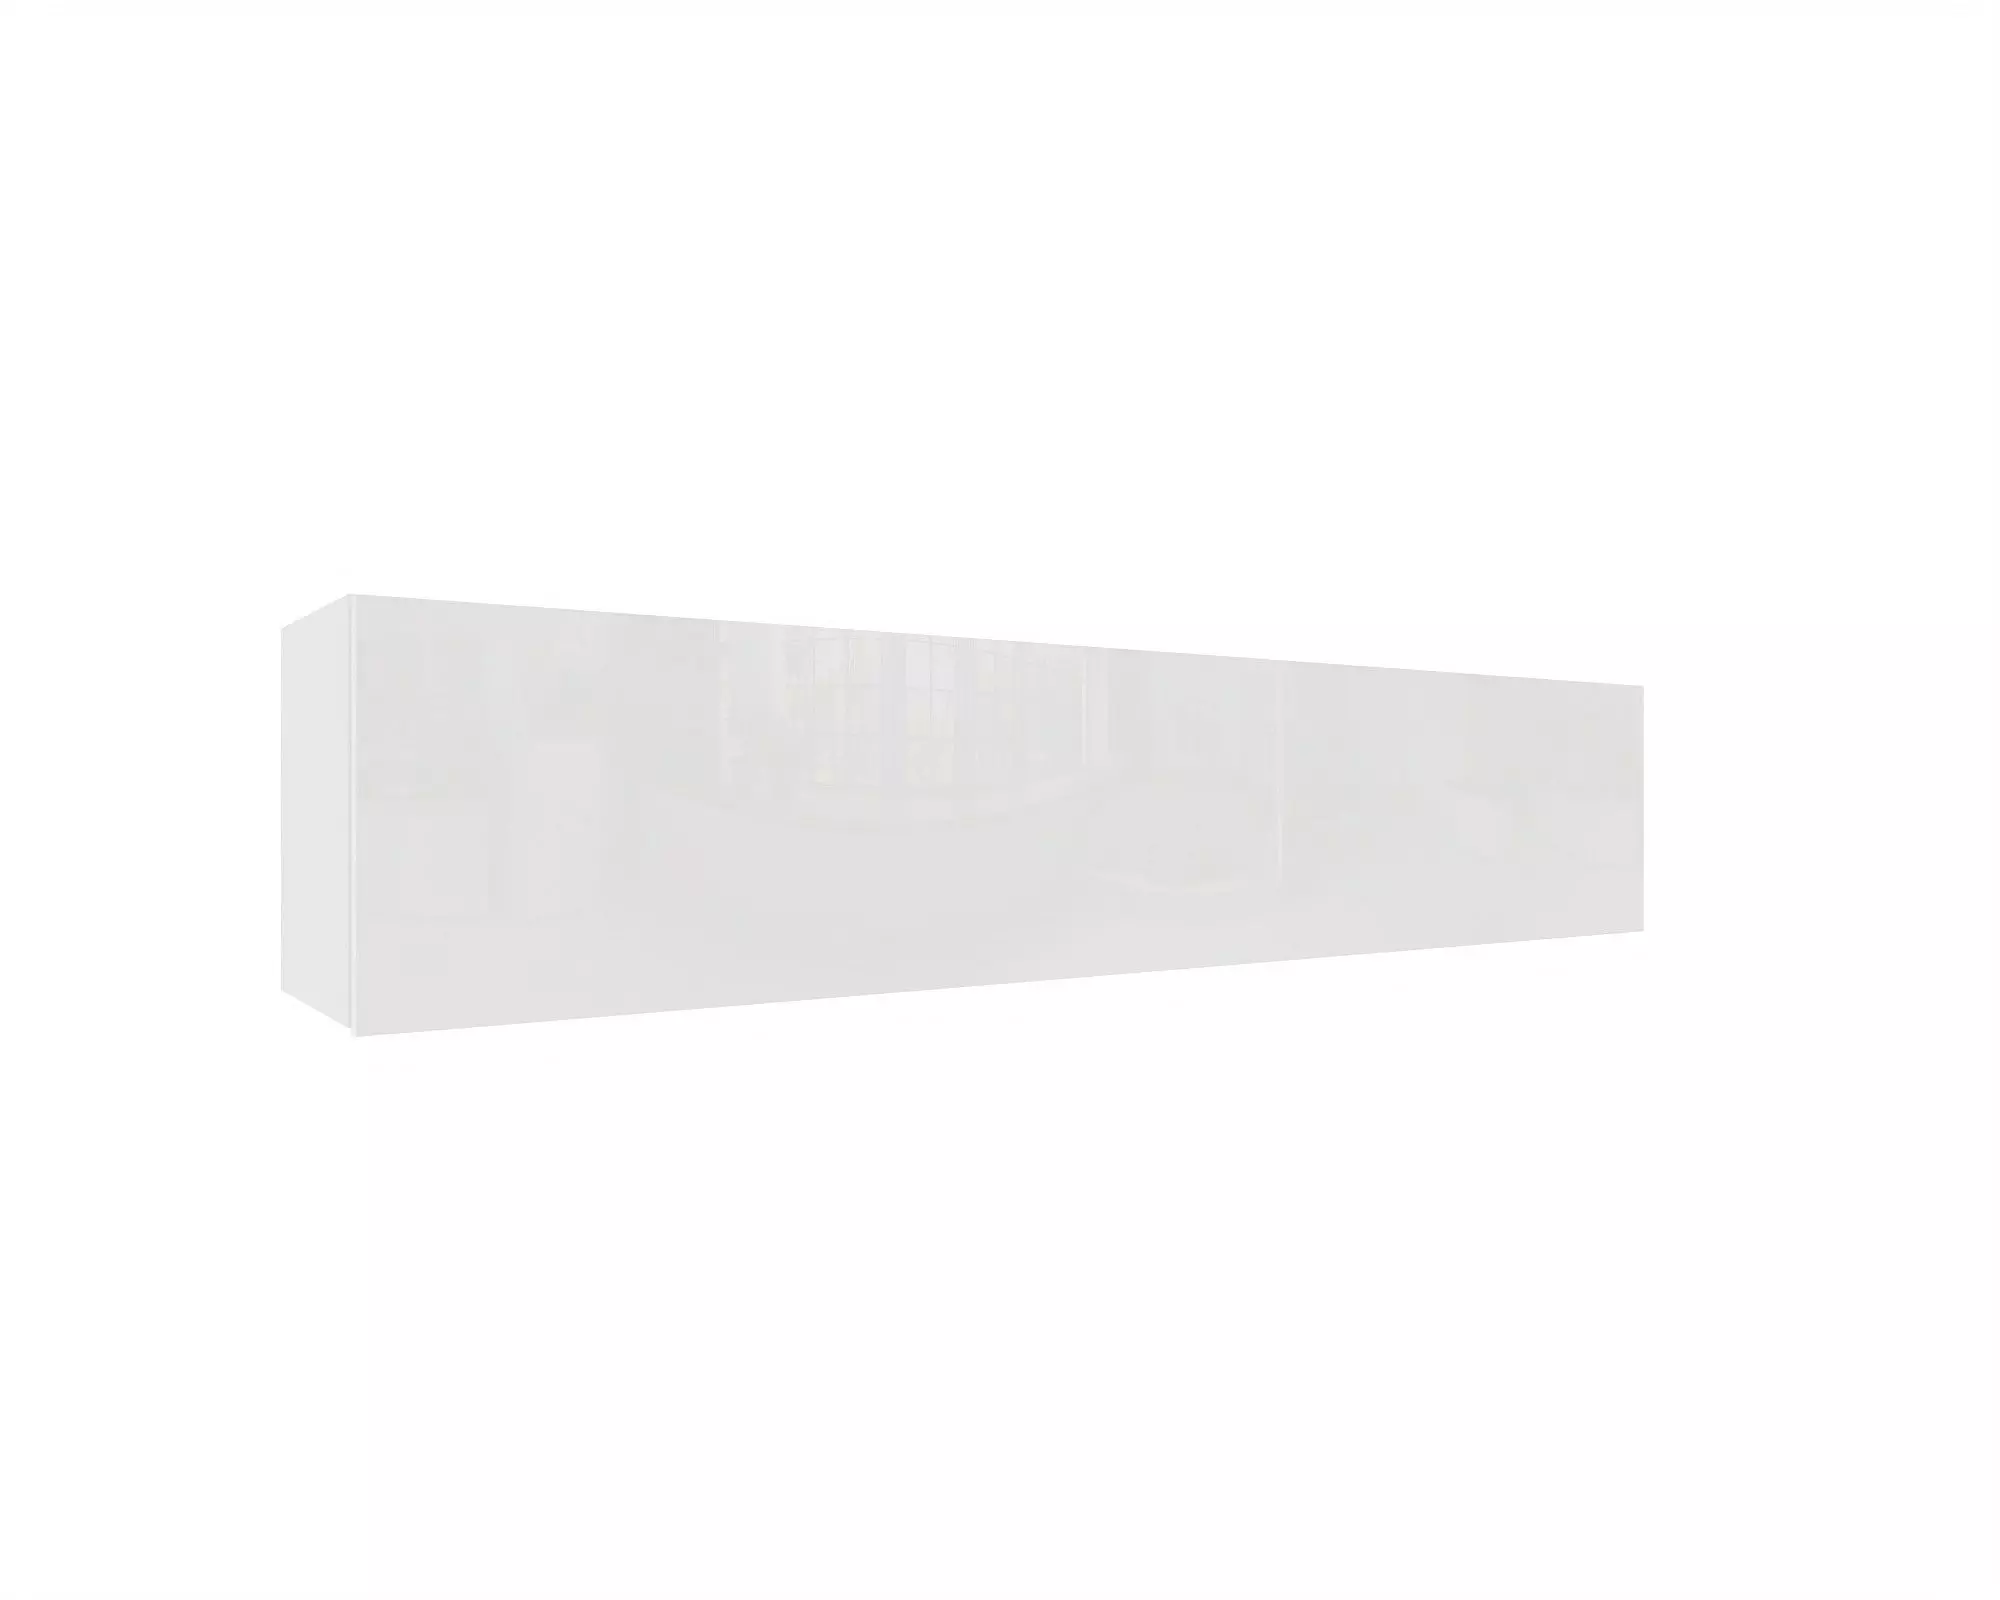 IZUMI 34 WH magasfényű fehér/fehér polcos szekrény 175 cm